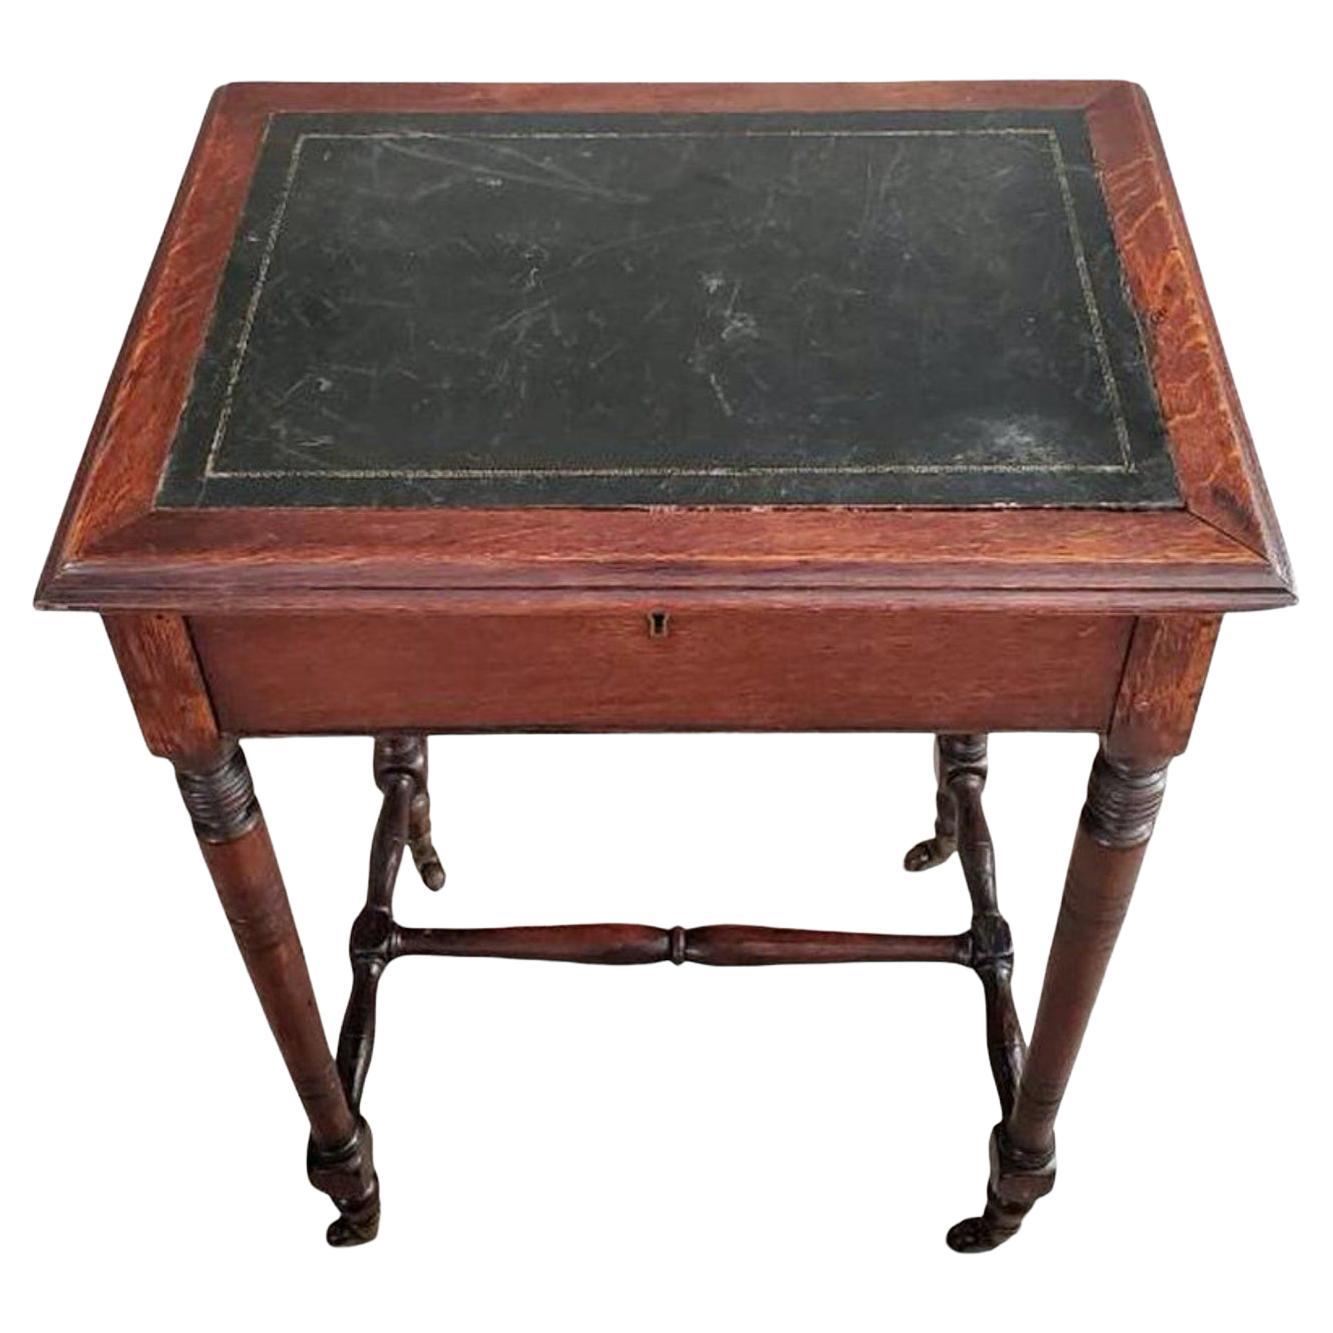 Englischer Eichenleder-Schreibtisch des frühen 19. Jahrhunderts